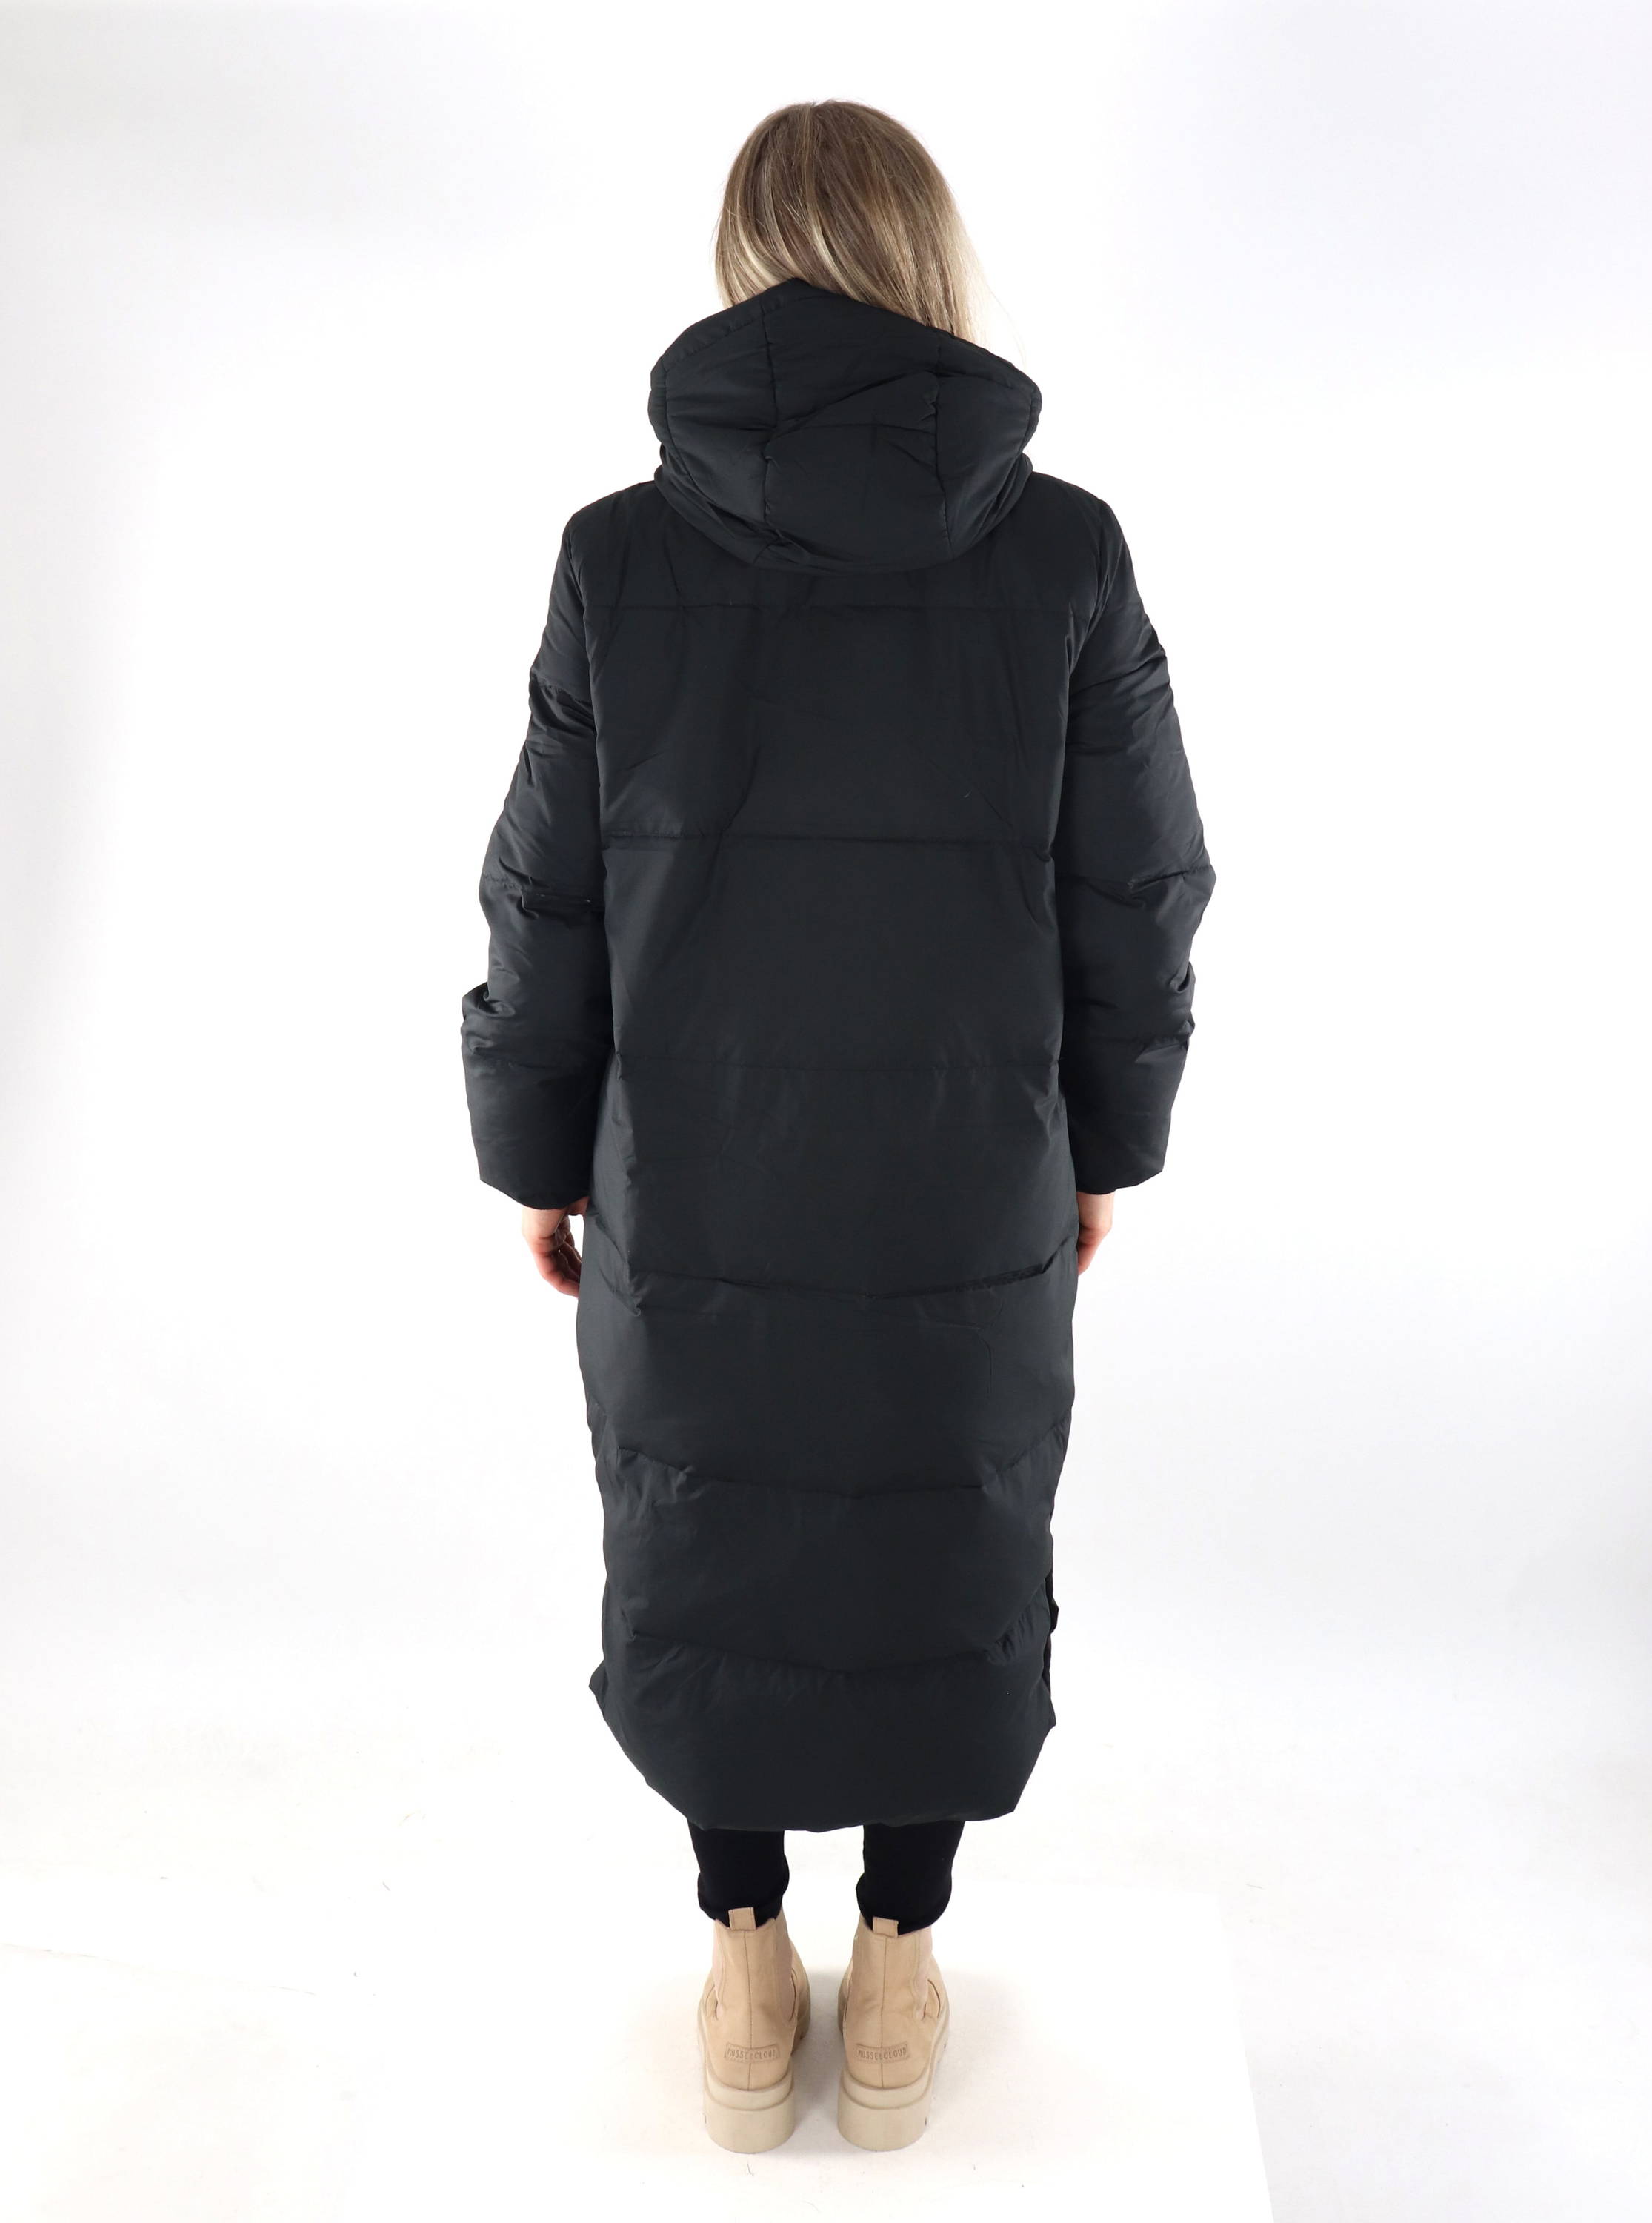 Only women's long down coat black - Stilettoshop.eu webstore